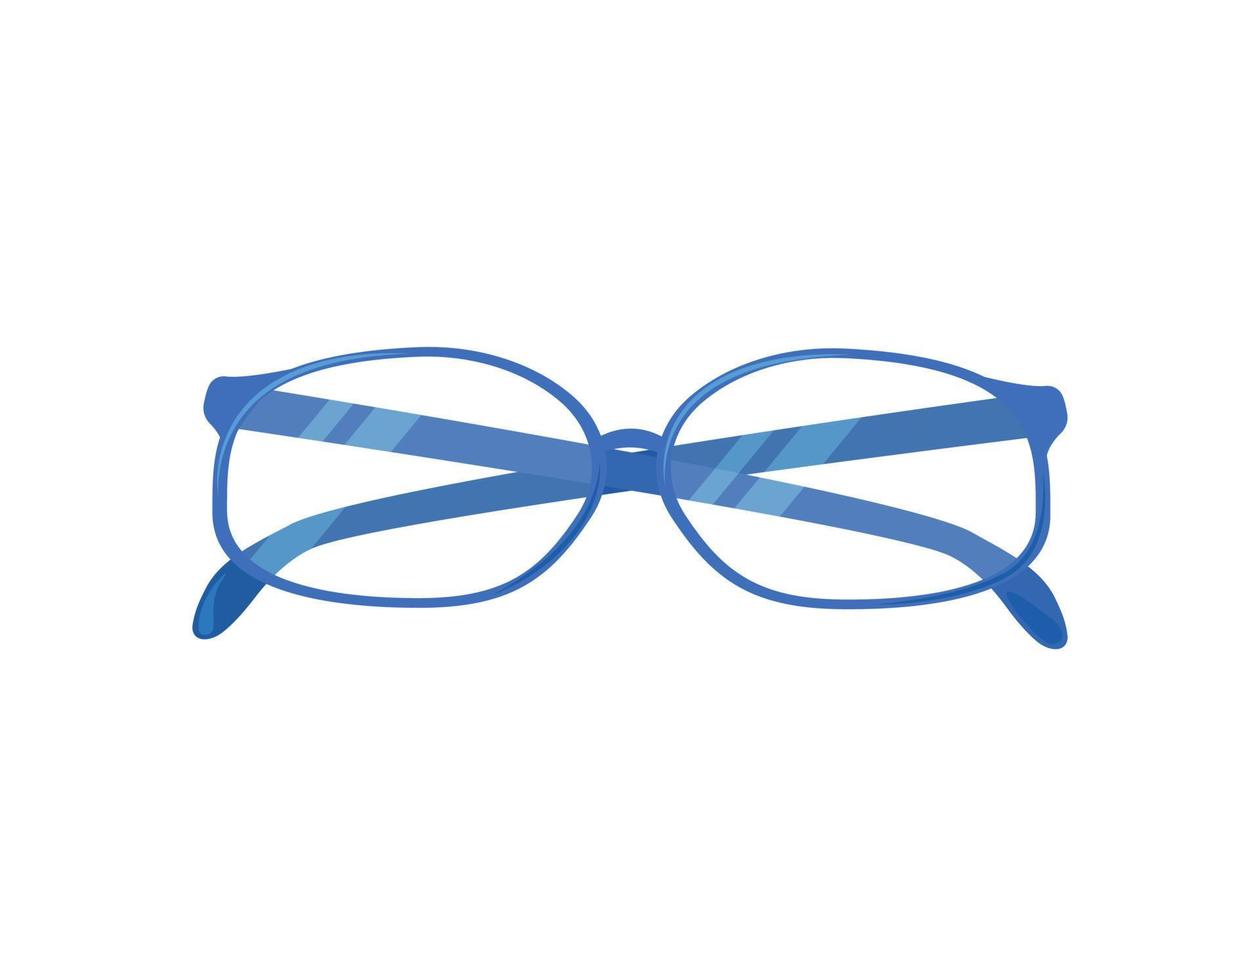 Brille isoliert. vektorflache illustration von optischen brillen. transparente Brille für das Sehvermögen. Brille auf weißem Hintergrund vektor